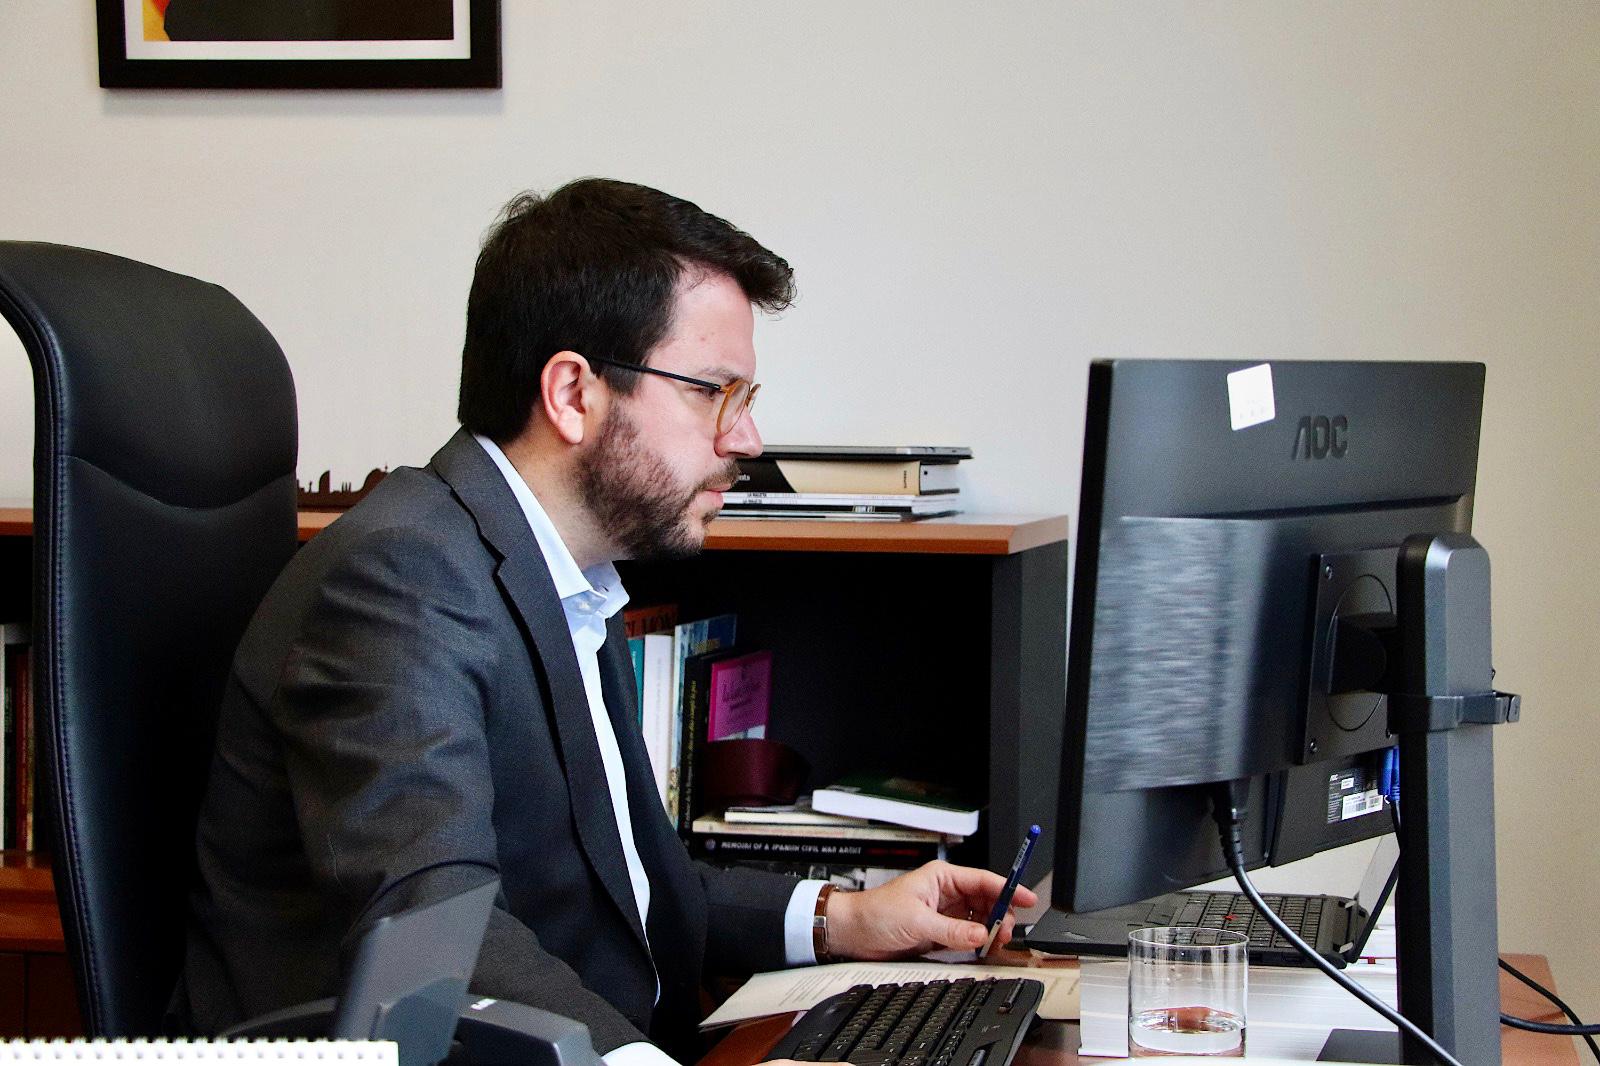 Aragonès cree que habrá "acuerdo" con JxCat en las elecciones